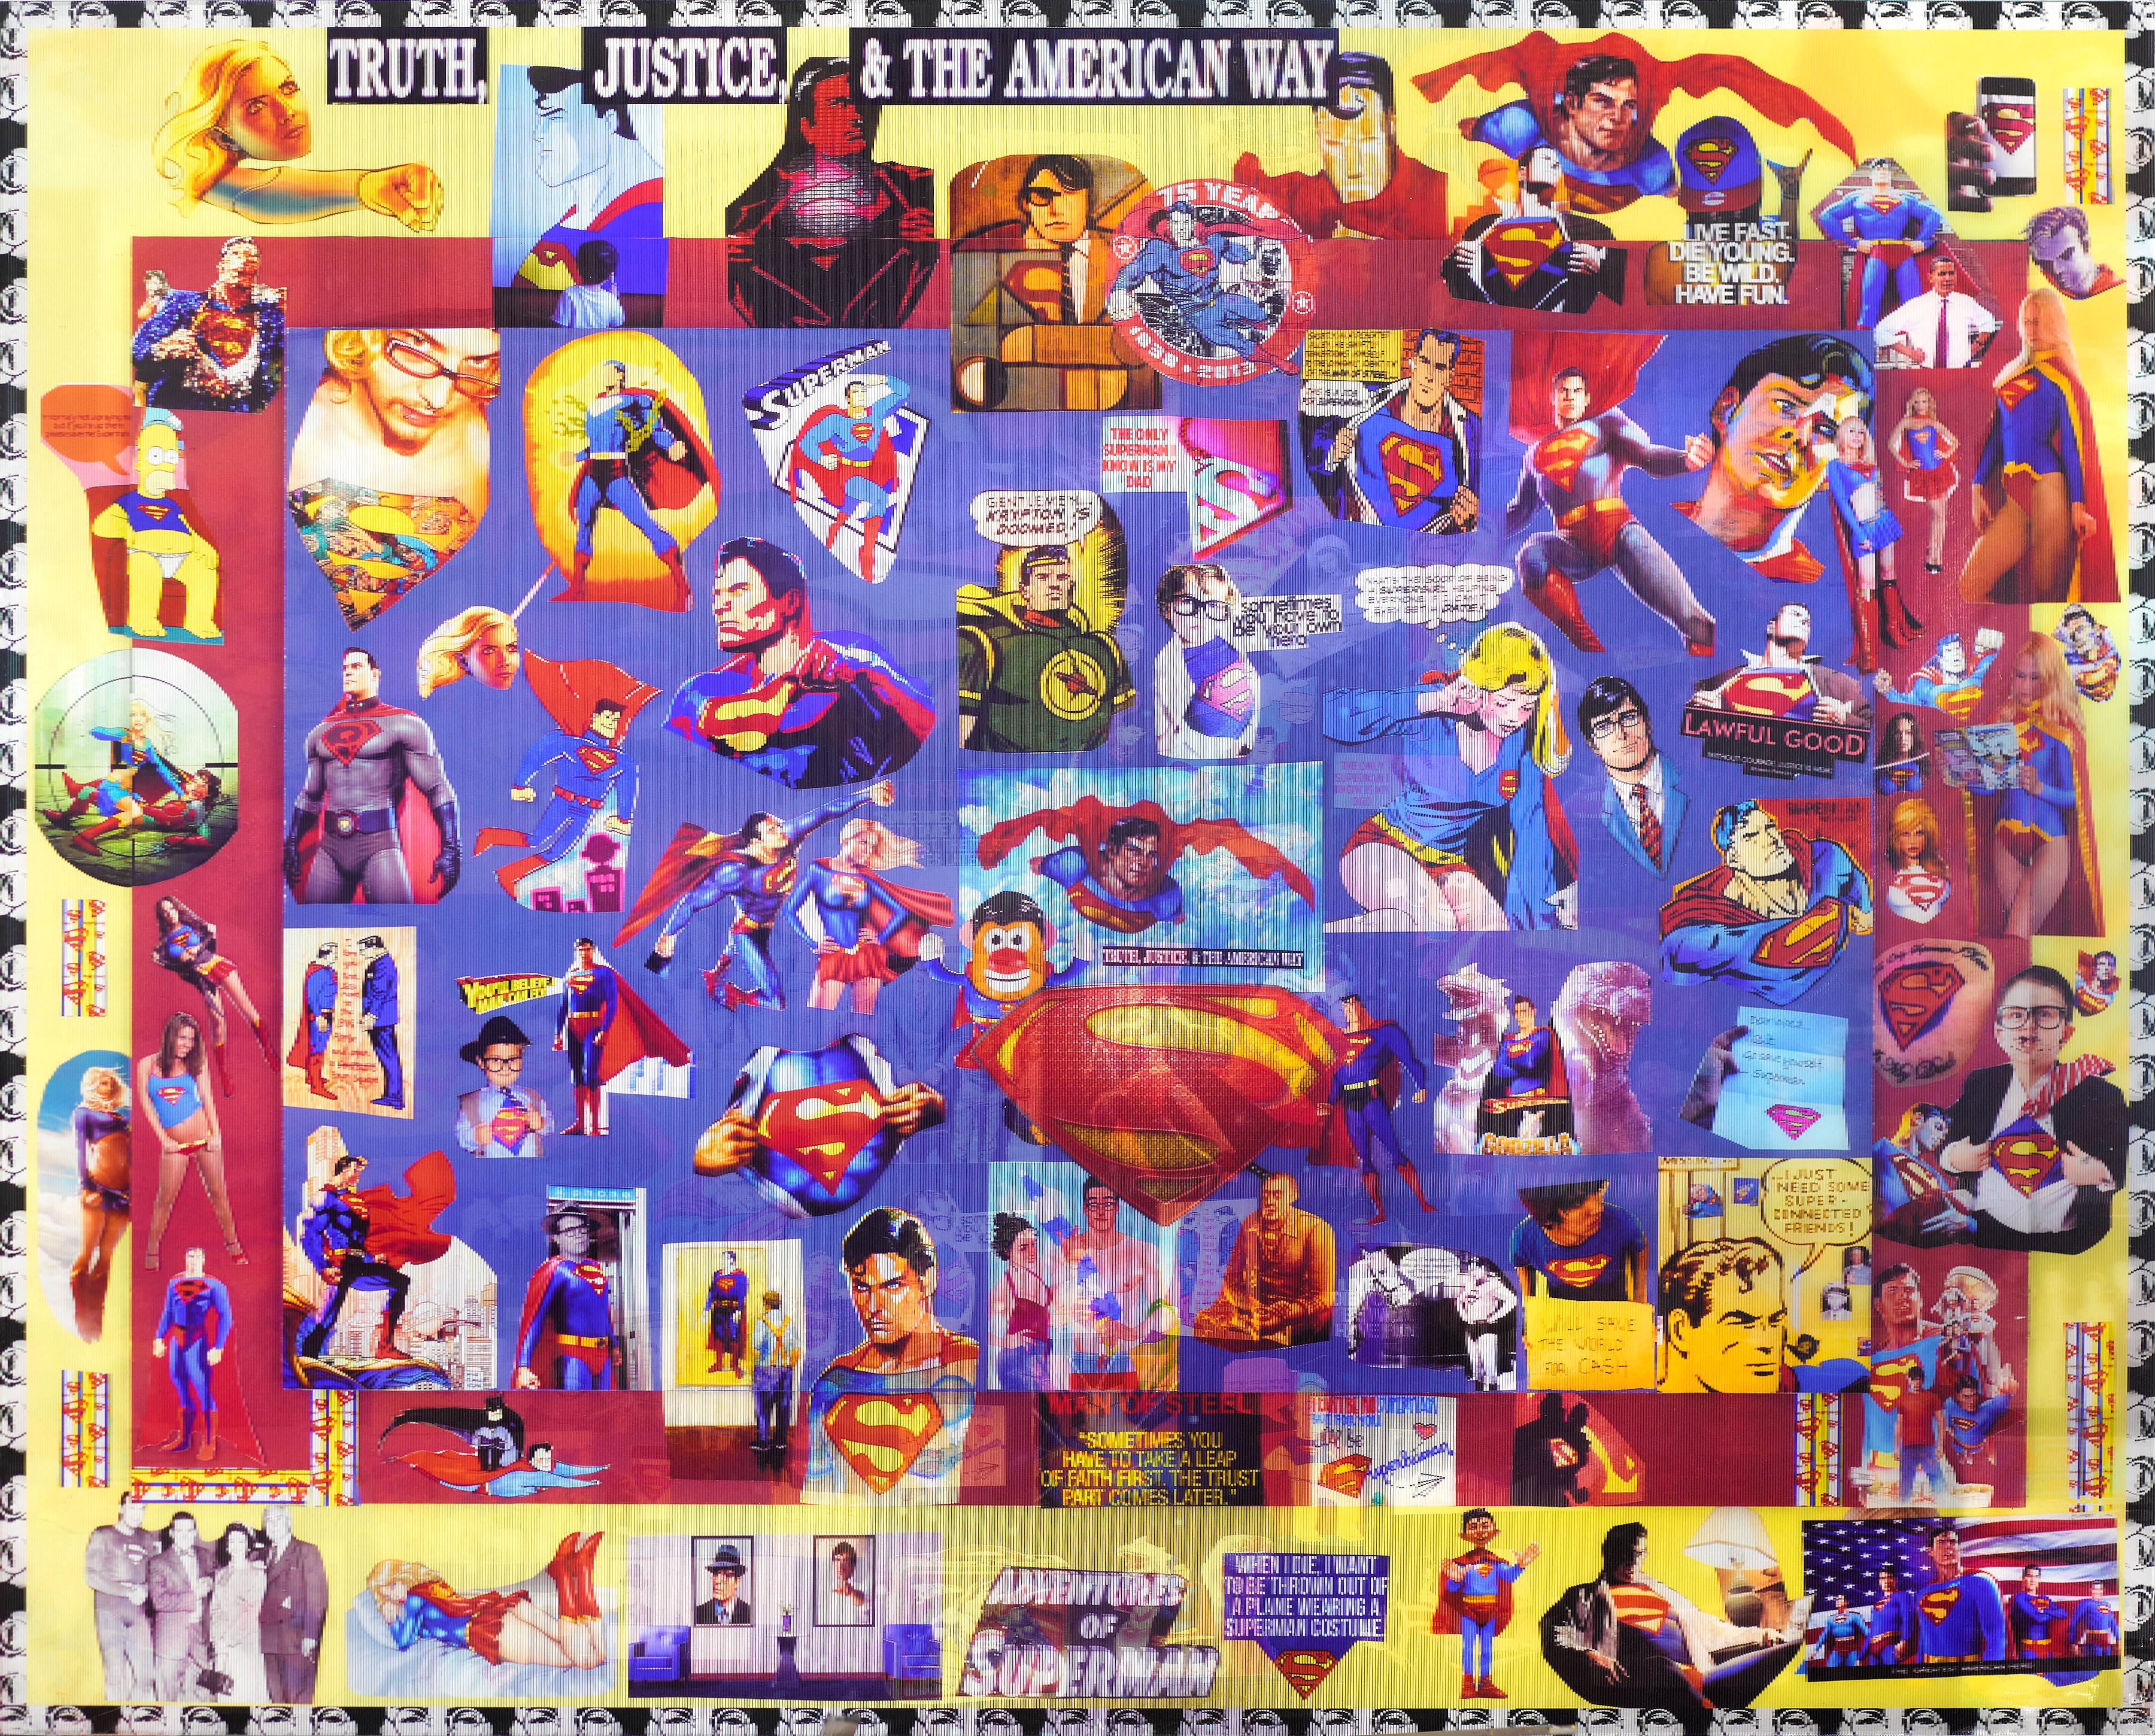 superman: Truth, Justice, and the American Way" von DJ Leon, 2013. Das Werk misst 32 x 40 Zoll. Dieser Lentikulardruck greift Bilder und Texte von Superman auf und kombiniert sie. Die Lentikularbilder bewegen sich, wenn der Betrachter seine Position